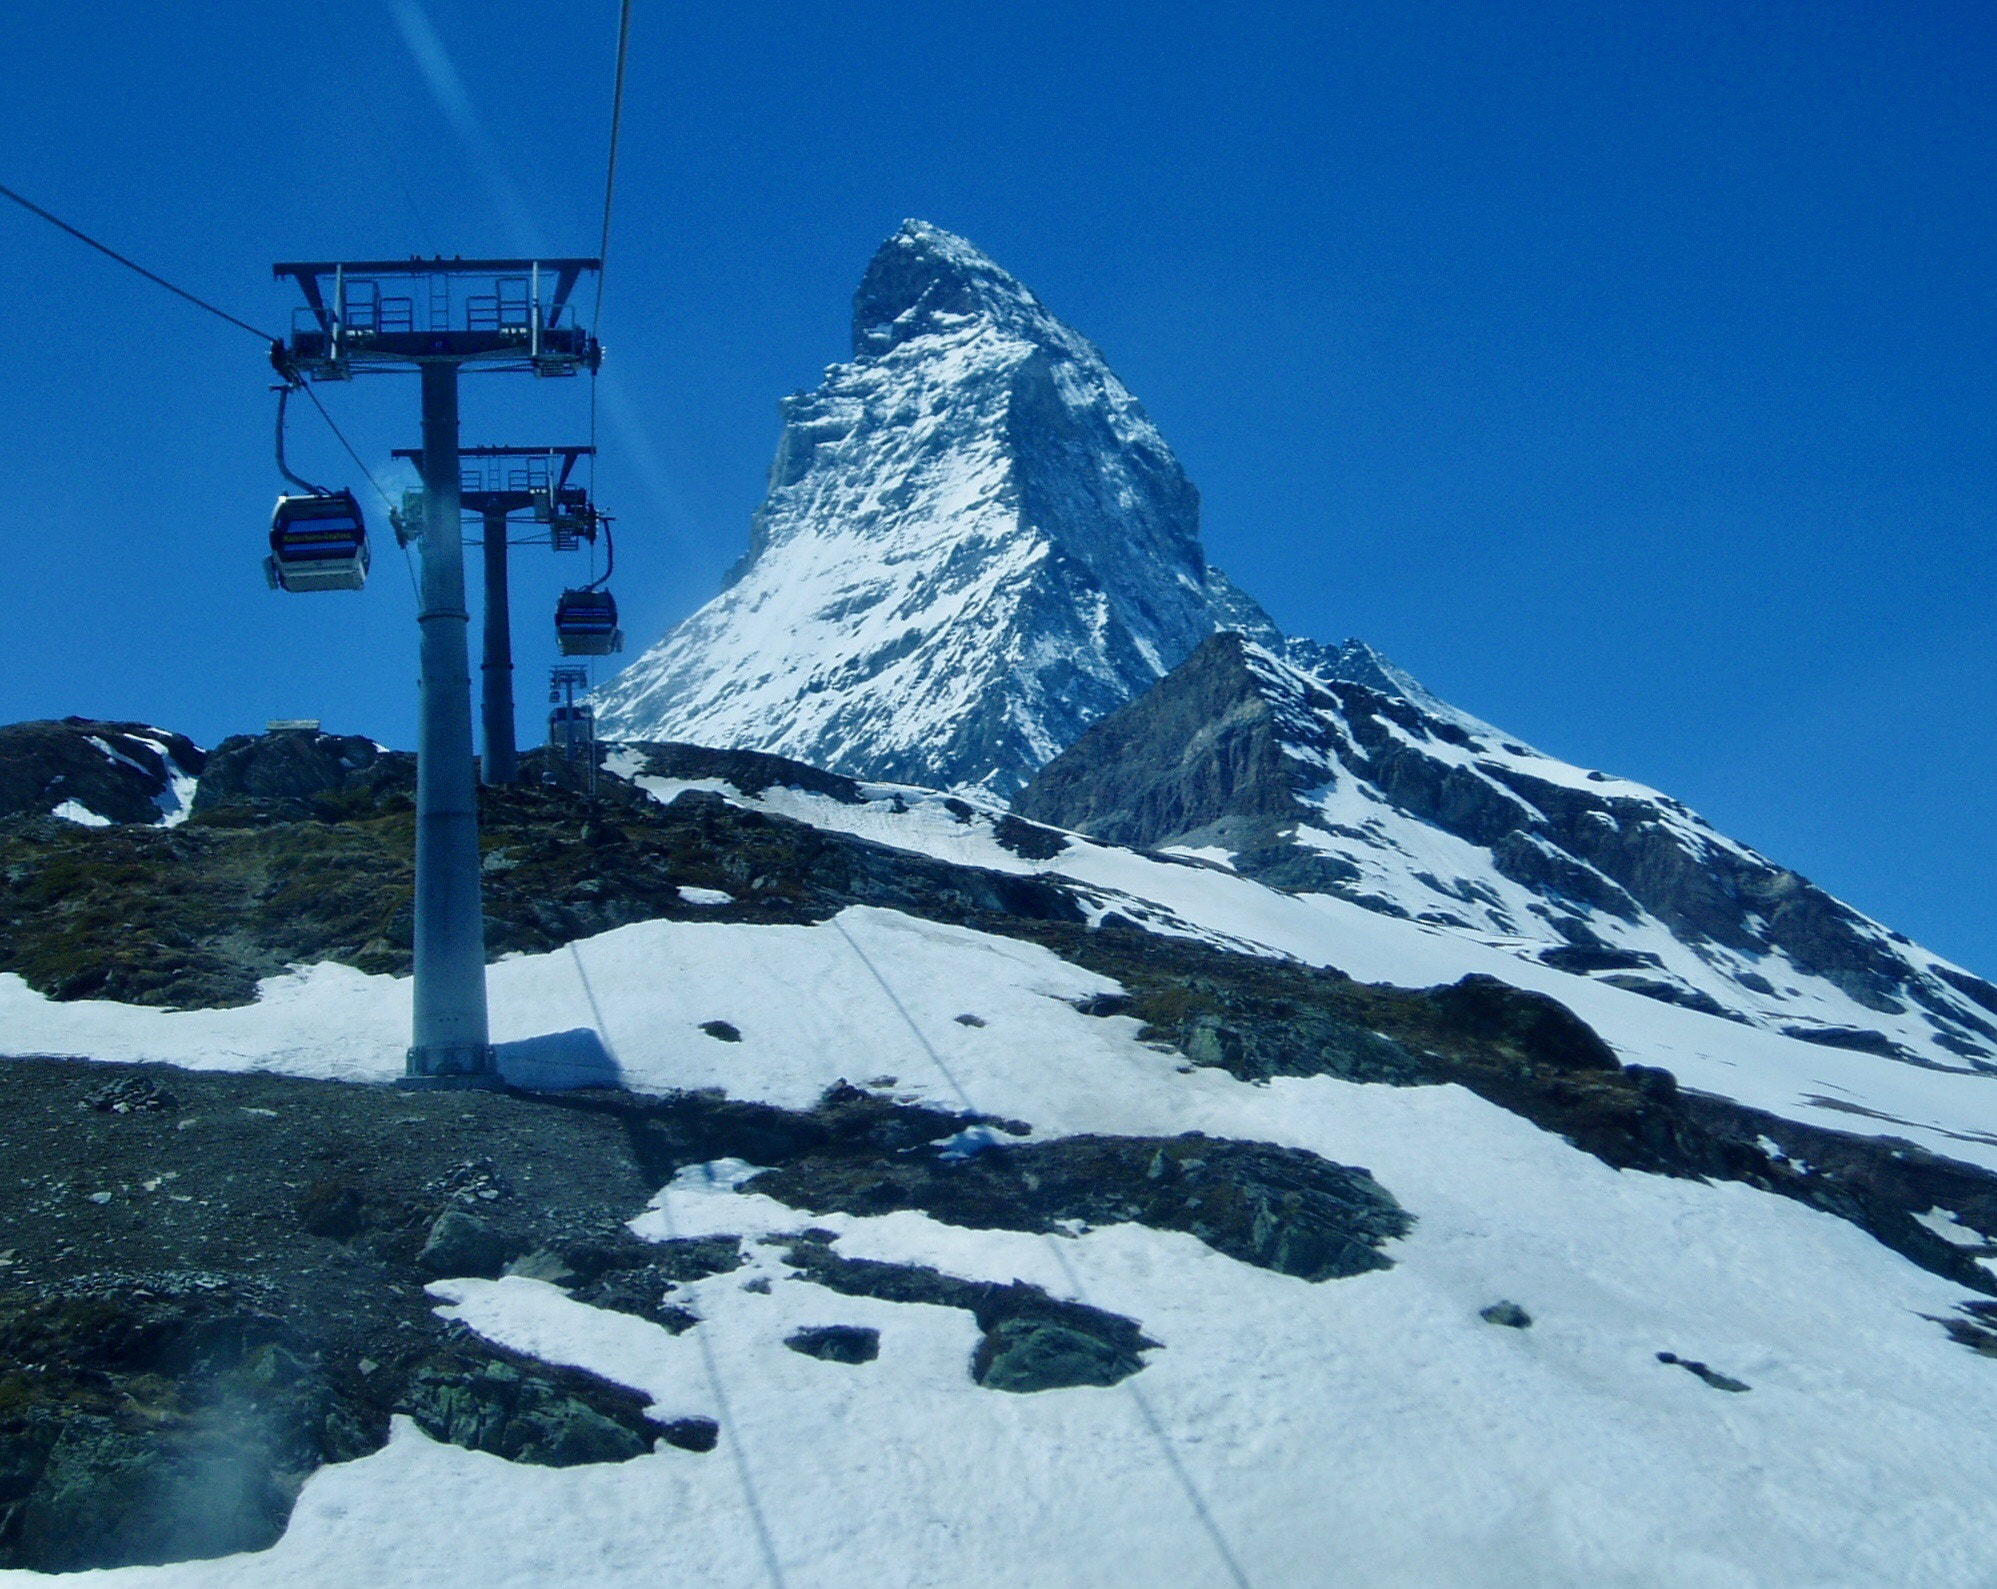 Olympus u20D,S400D,u400D sample photo. Matterhorn  photography